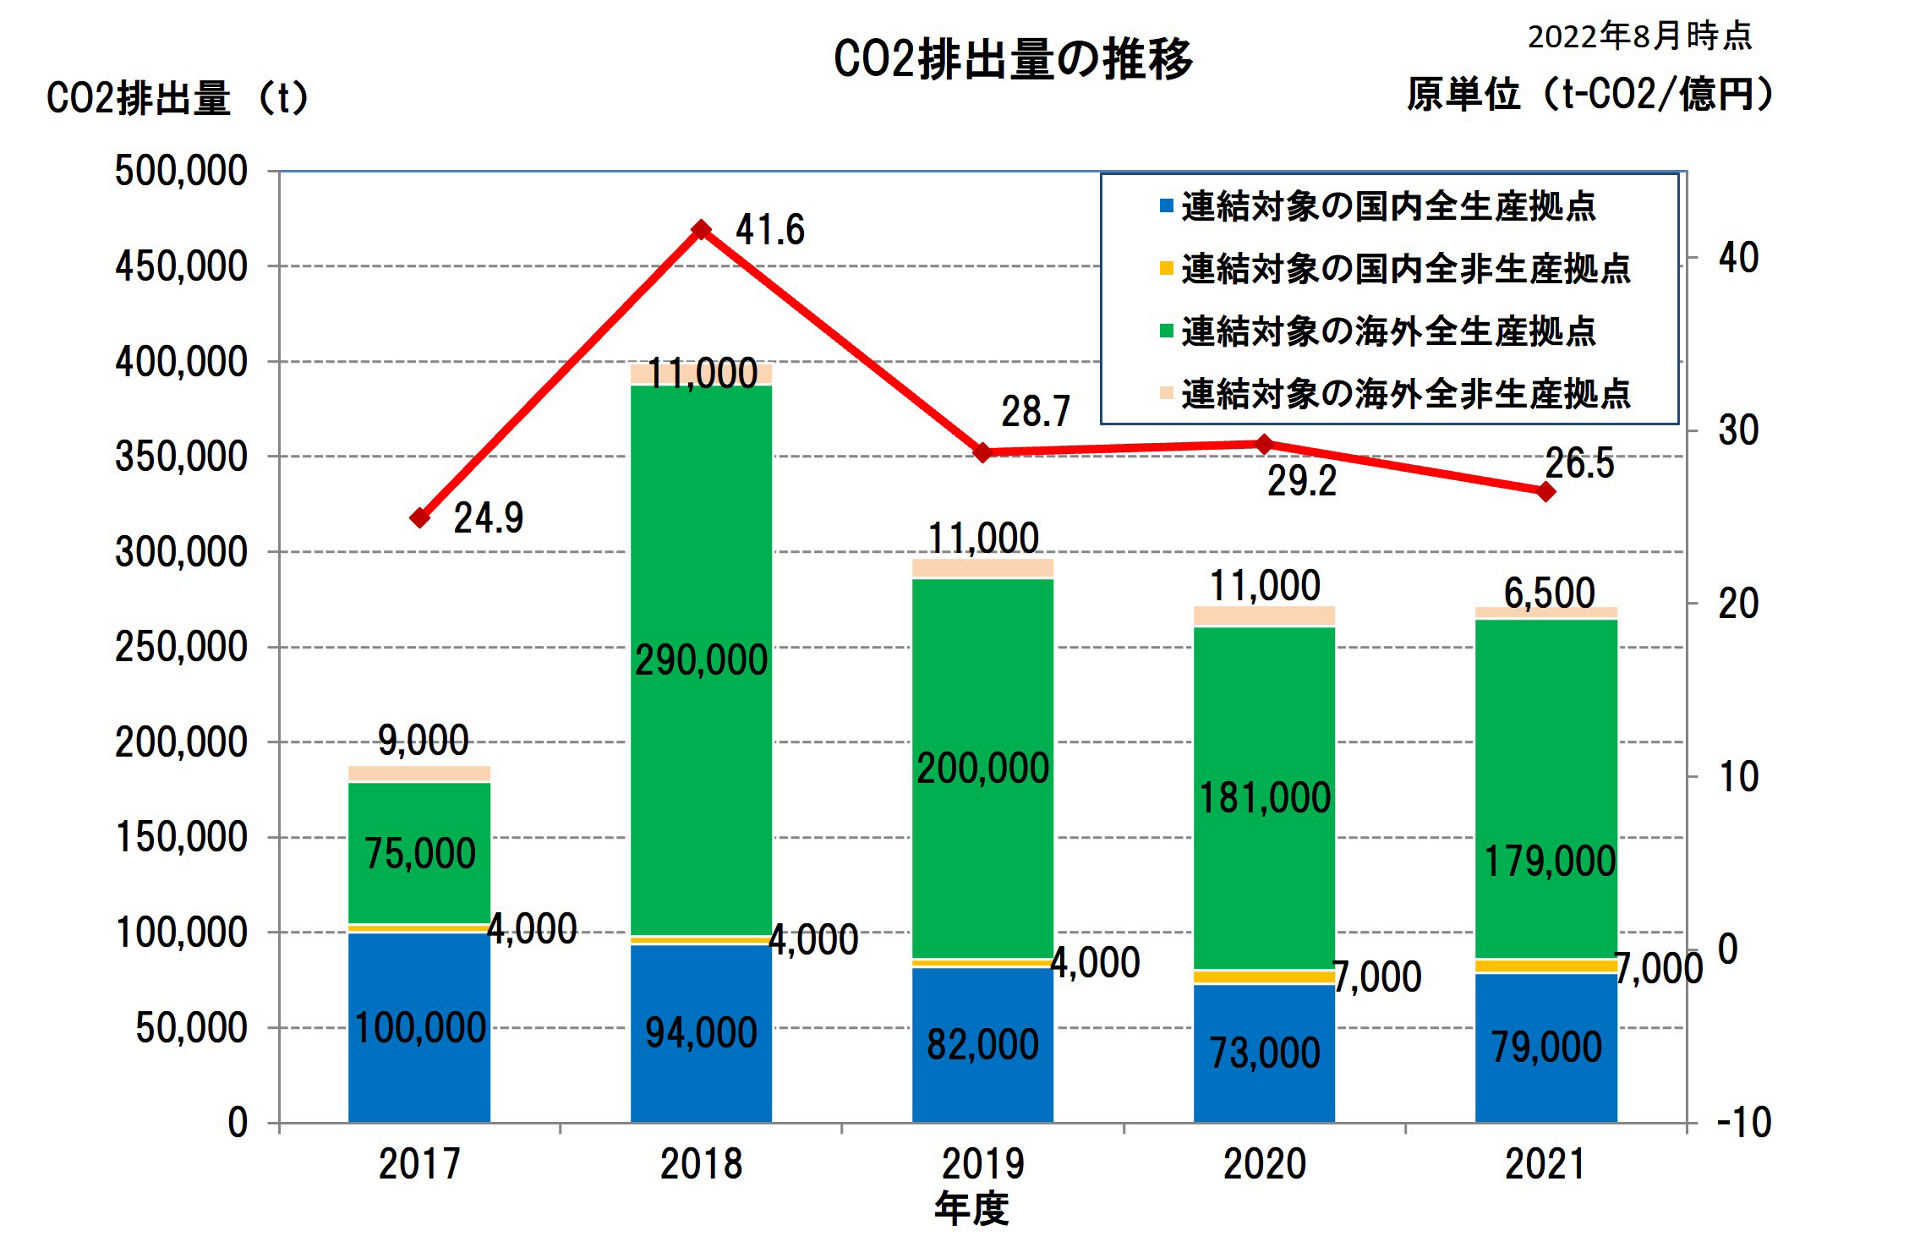 集計範囲：連結対象の国内外全生産・非生産拠点（2018年度の実績からBradken社を含めています） 2022年、過去データを見直し修正しています。 電力CO2排出係数は、日本については「地球温暖化対策の推進に関する法律」(温対法)に基づく電力事業者別の調整後排出係数、 海外についてはIEAの国別排出係数の各年度における最新値および電力供給会社が提供する最新の係数を使用しています。